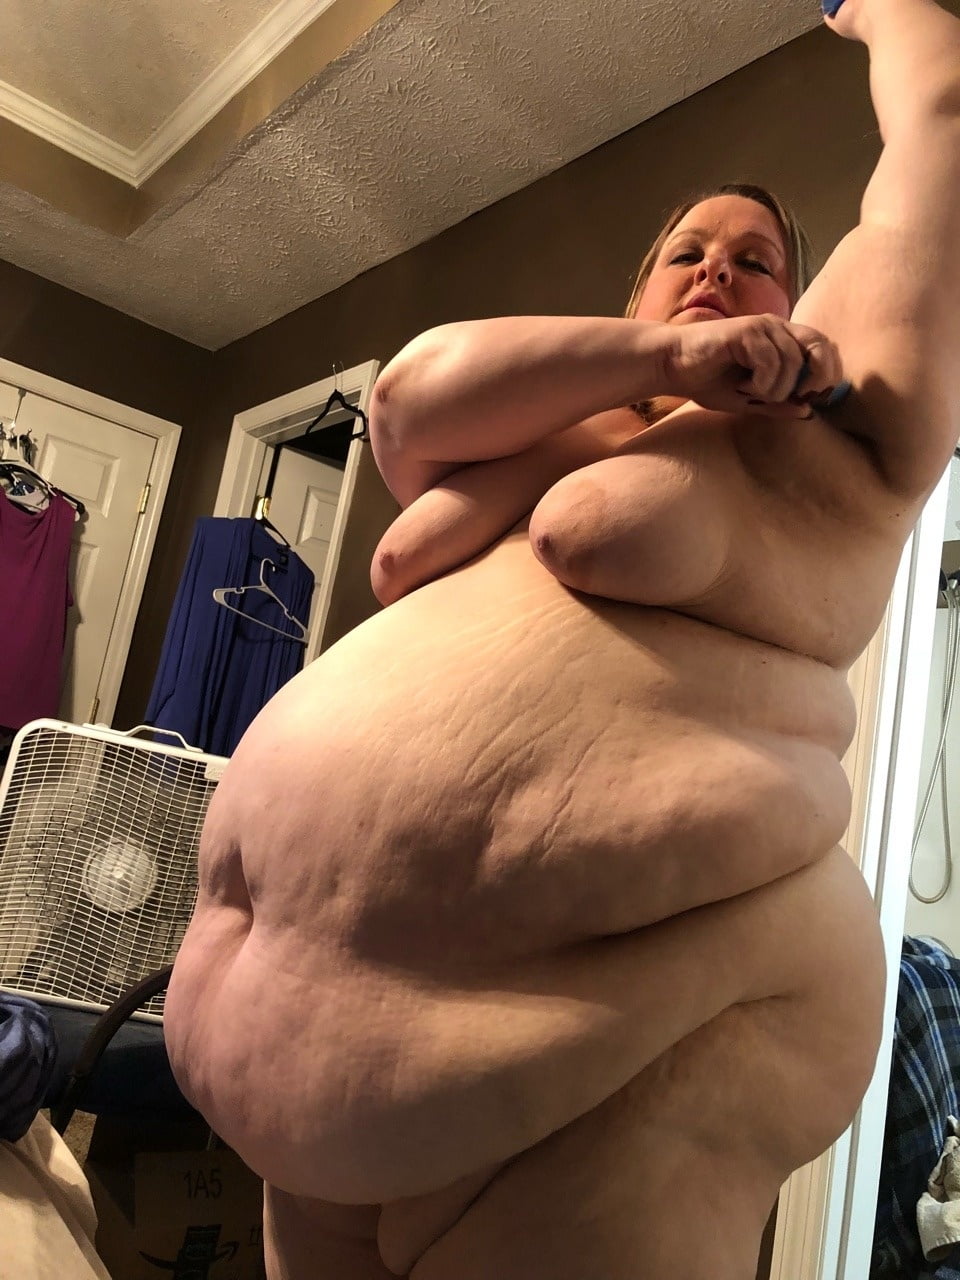 Fat women pics, naked women galleries